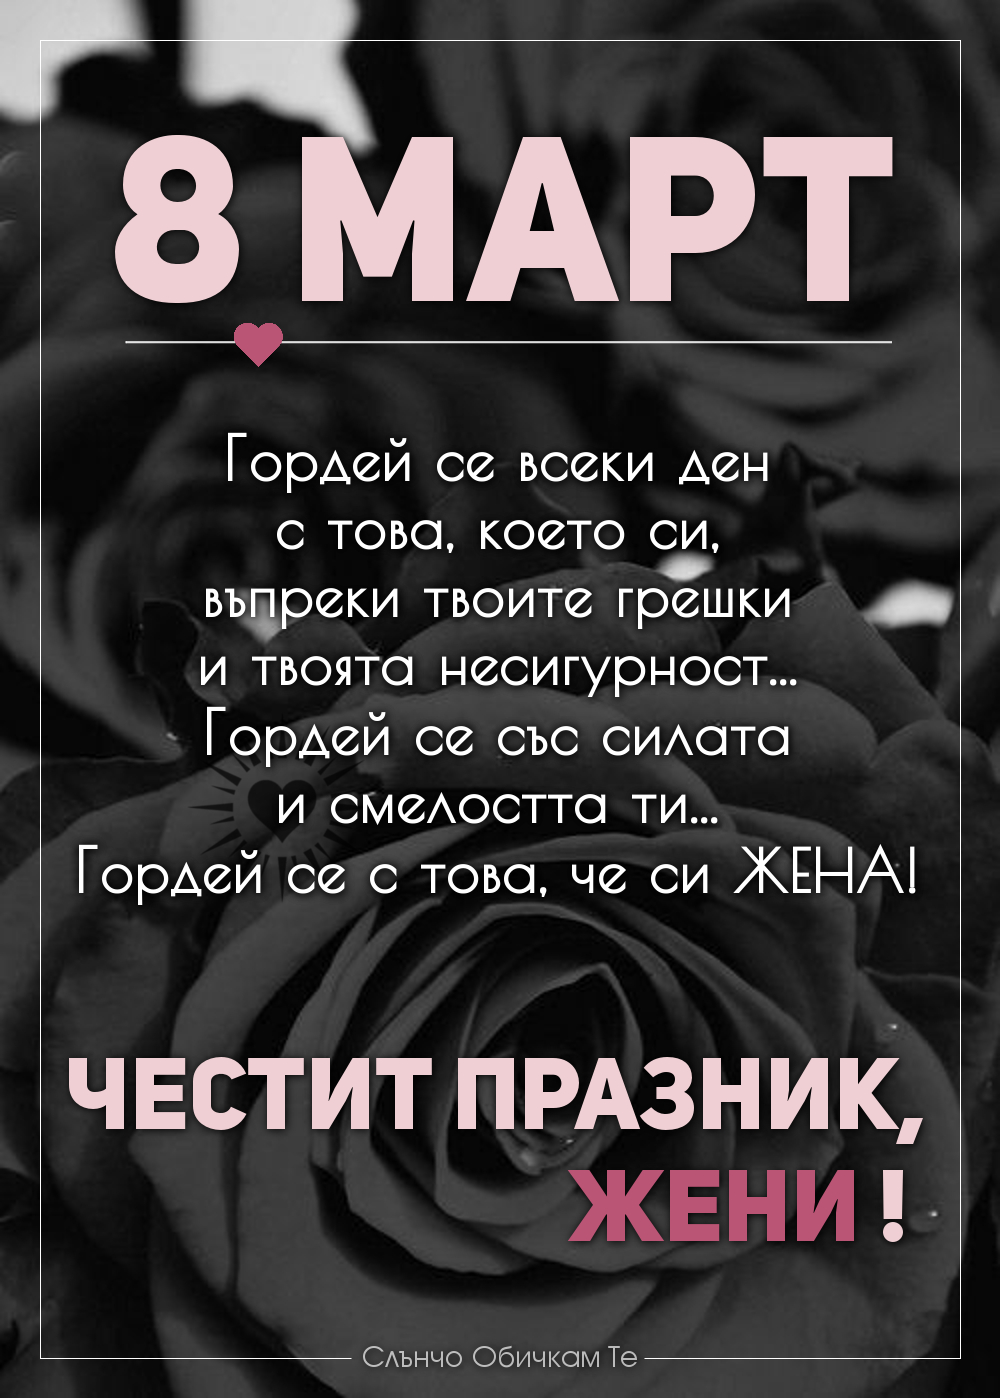 Гордей се с това че си жена! Честит 8 март! - Картички за 8 март, пожелания за 8 март, цветя, ден на жената, празник на жената